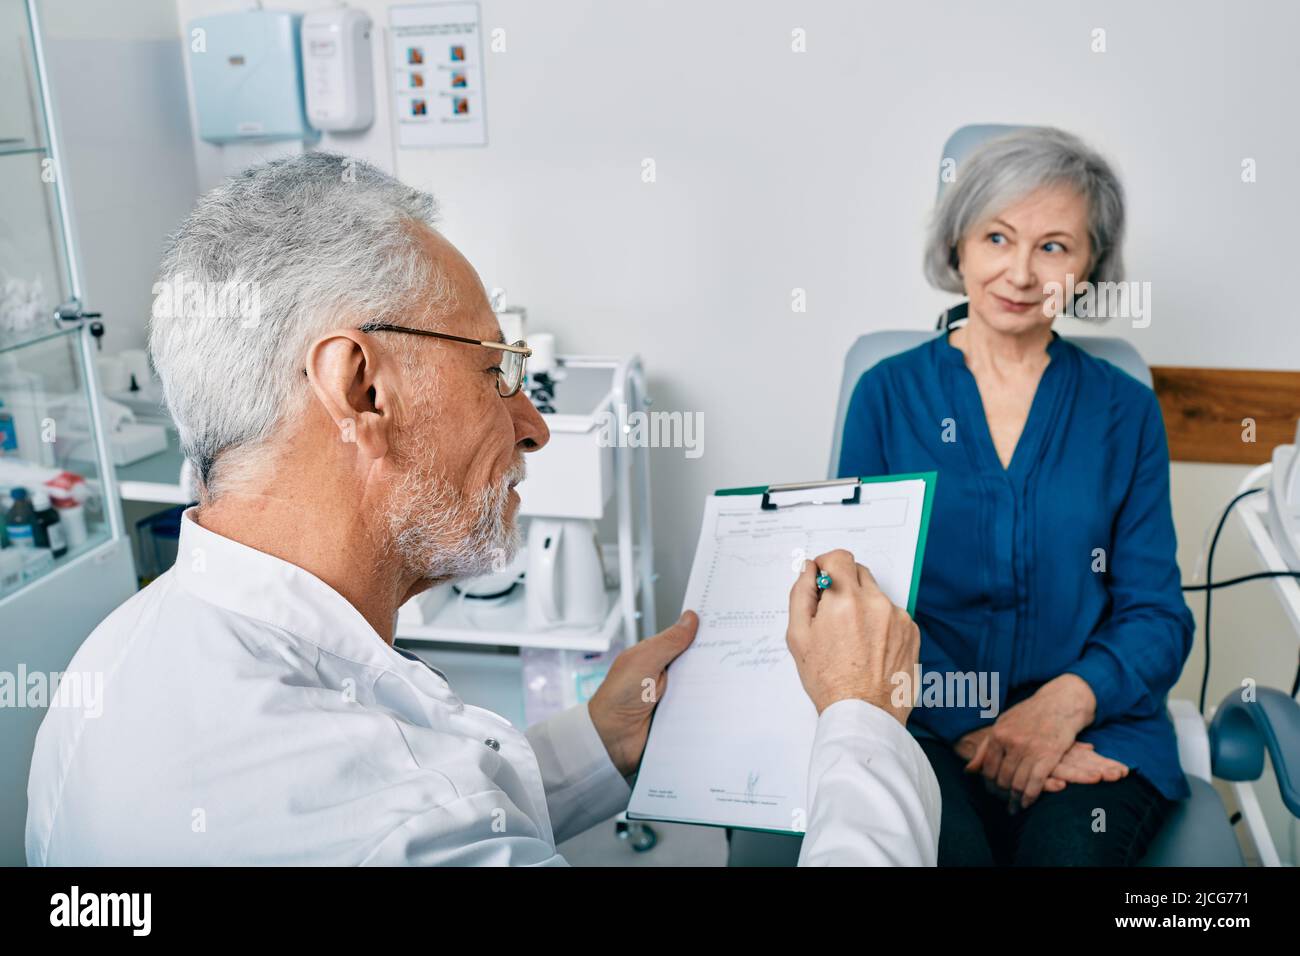 Audiologiste aux cheveux gris qui consulte une patiente âgée ayant des problèmes d'audition au centre auditif. Consultation du médecin de l'audition Banque D'Images